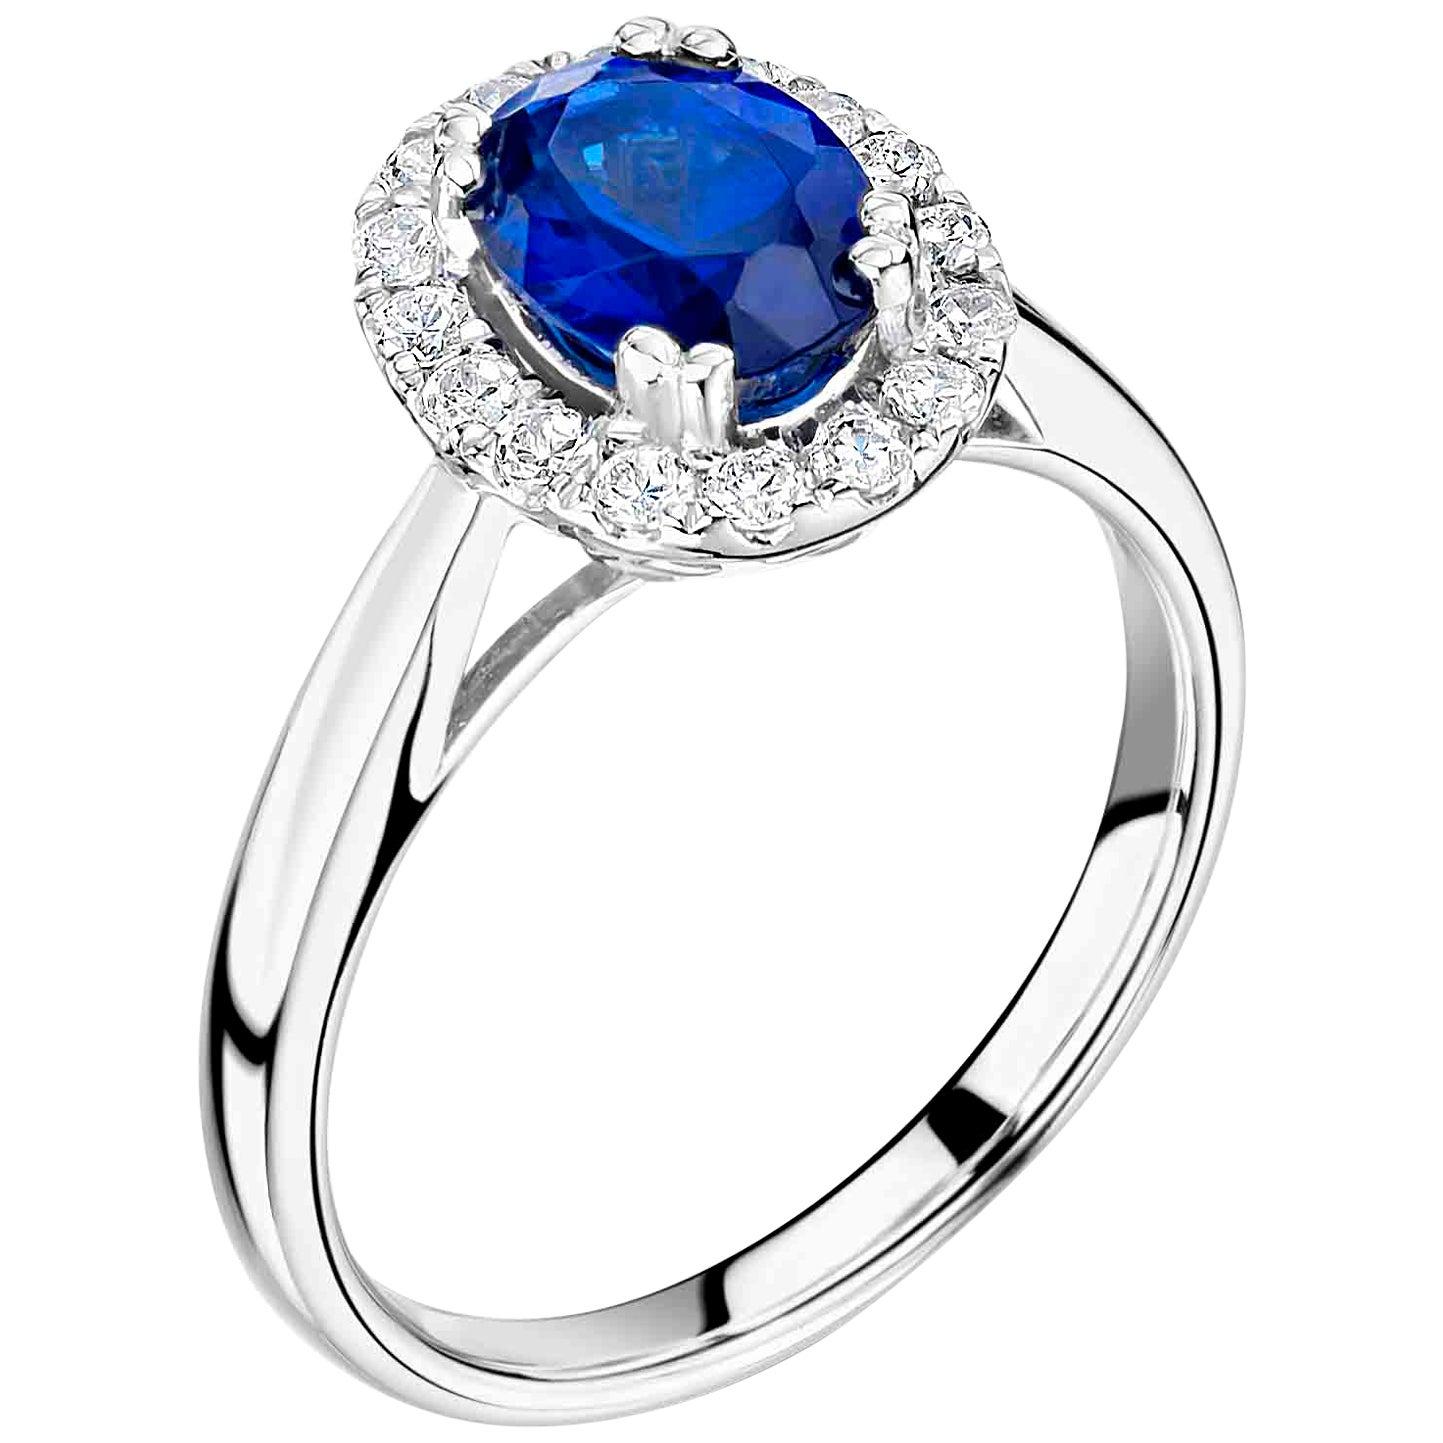 Art Nouveau 1 Carat Royal Blue Ceylon Sapphire Engagement Ring in a Diamond Halo For Sale